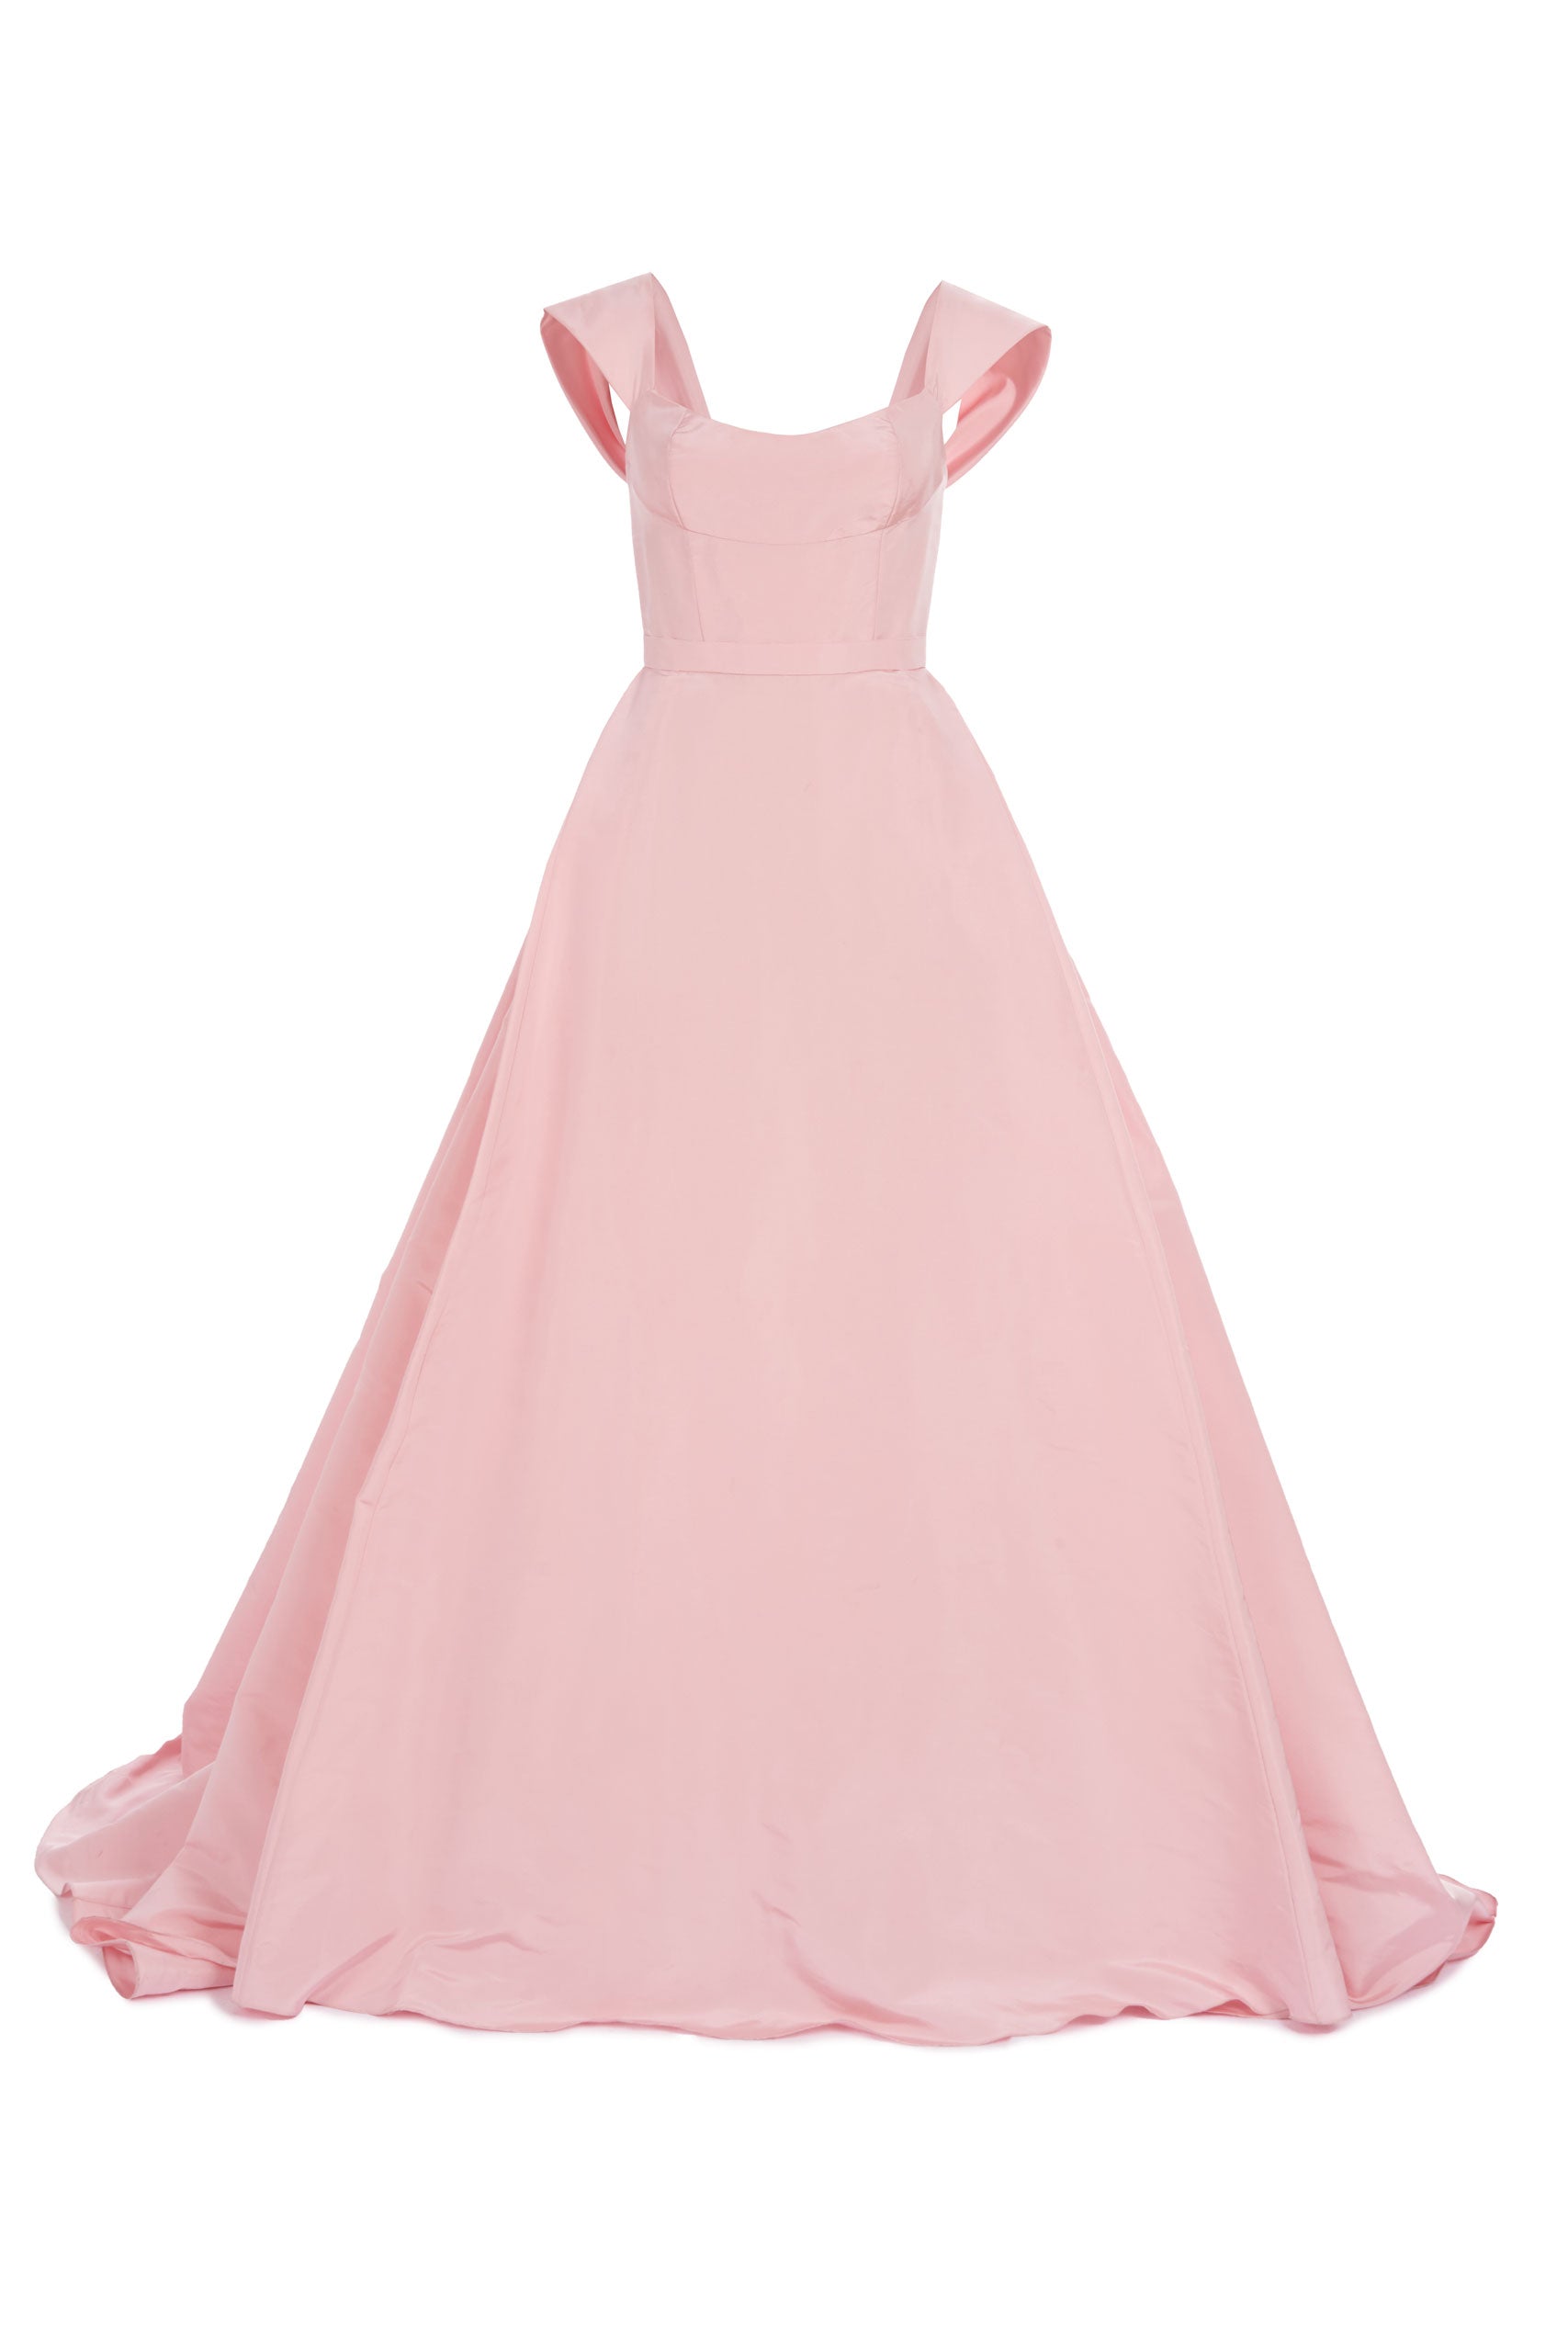 Princess V Neck Long Pink/Light Blue Prom Dresses, Puffy Pink/Light Bl –  Shiny Party